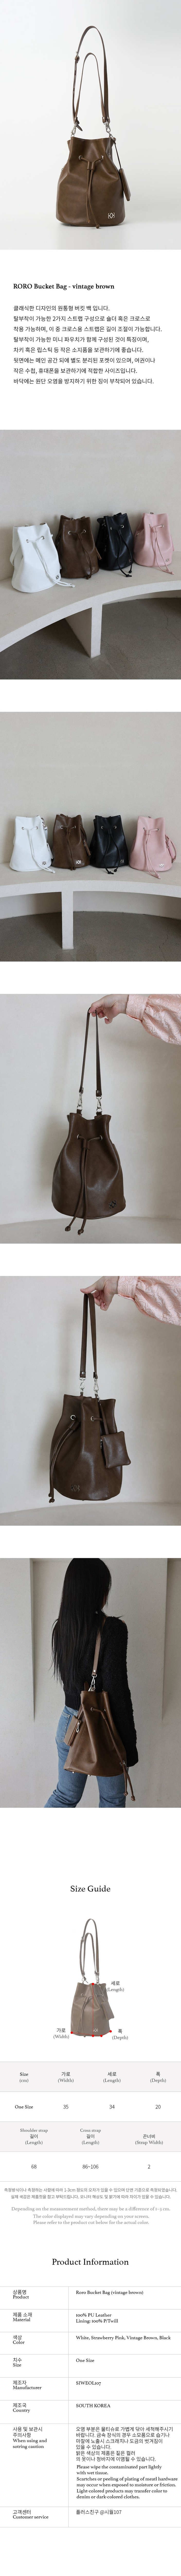 roro bucket bag (vintage brown)